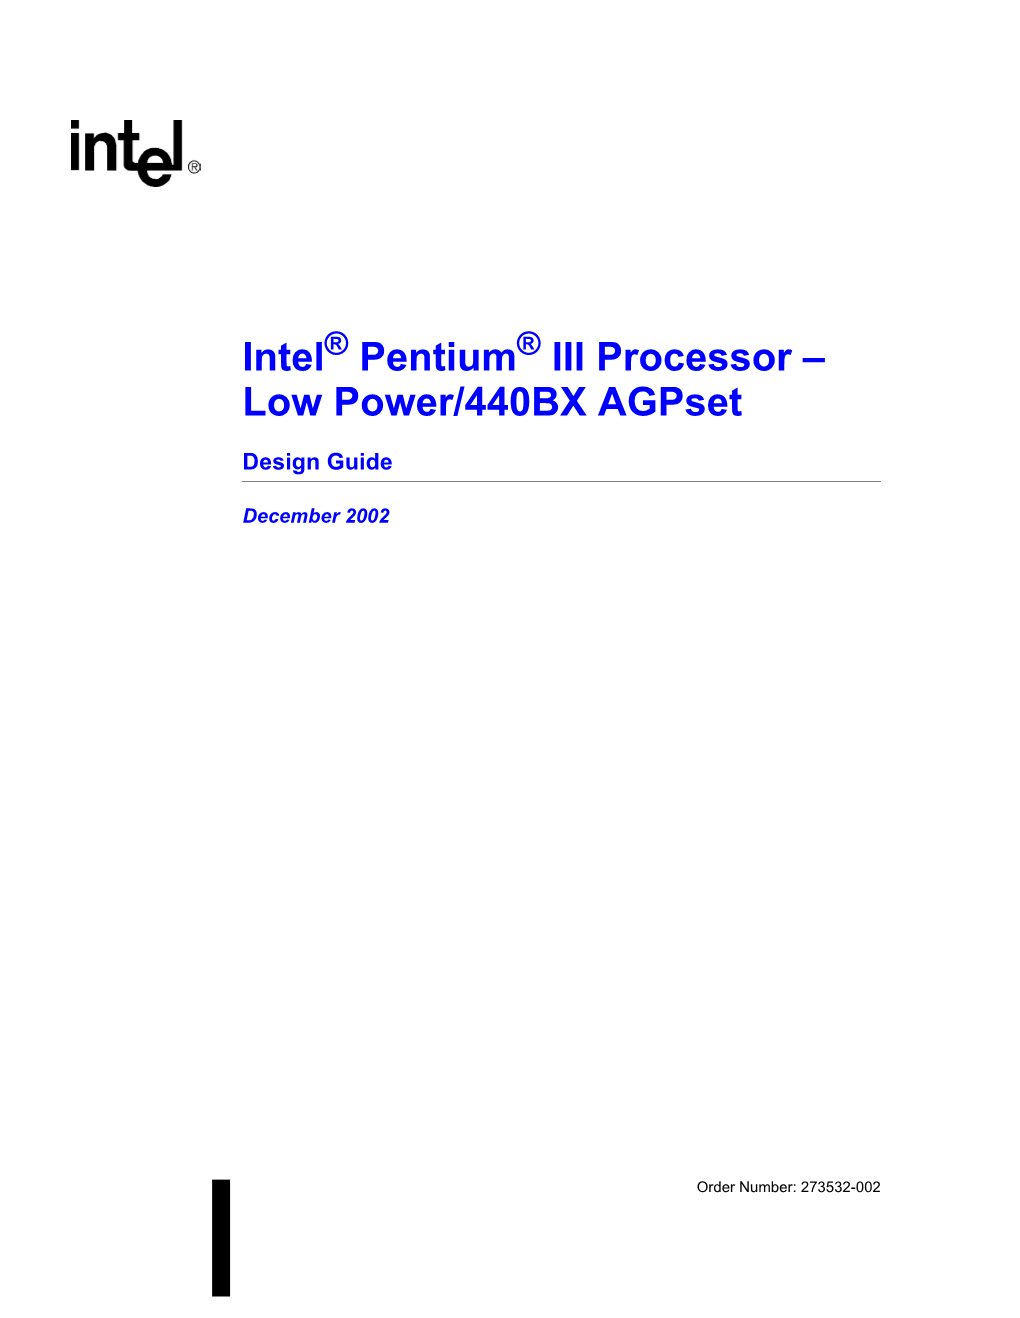 Intel Pentium III Processor